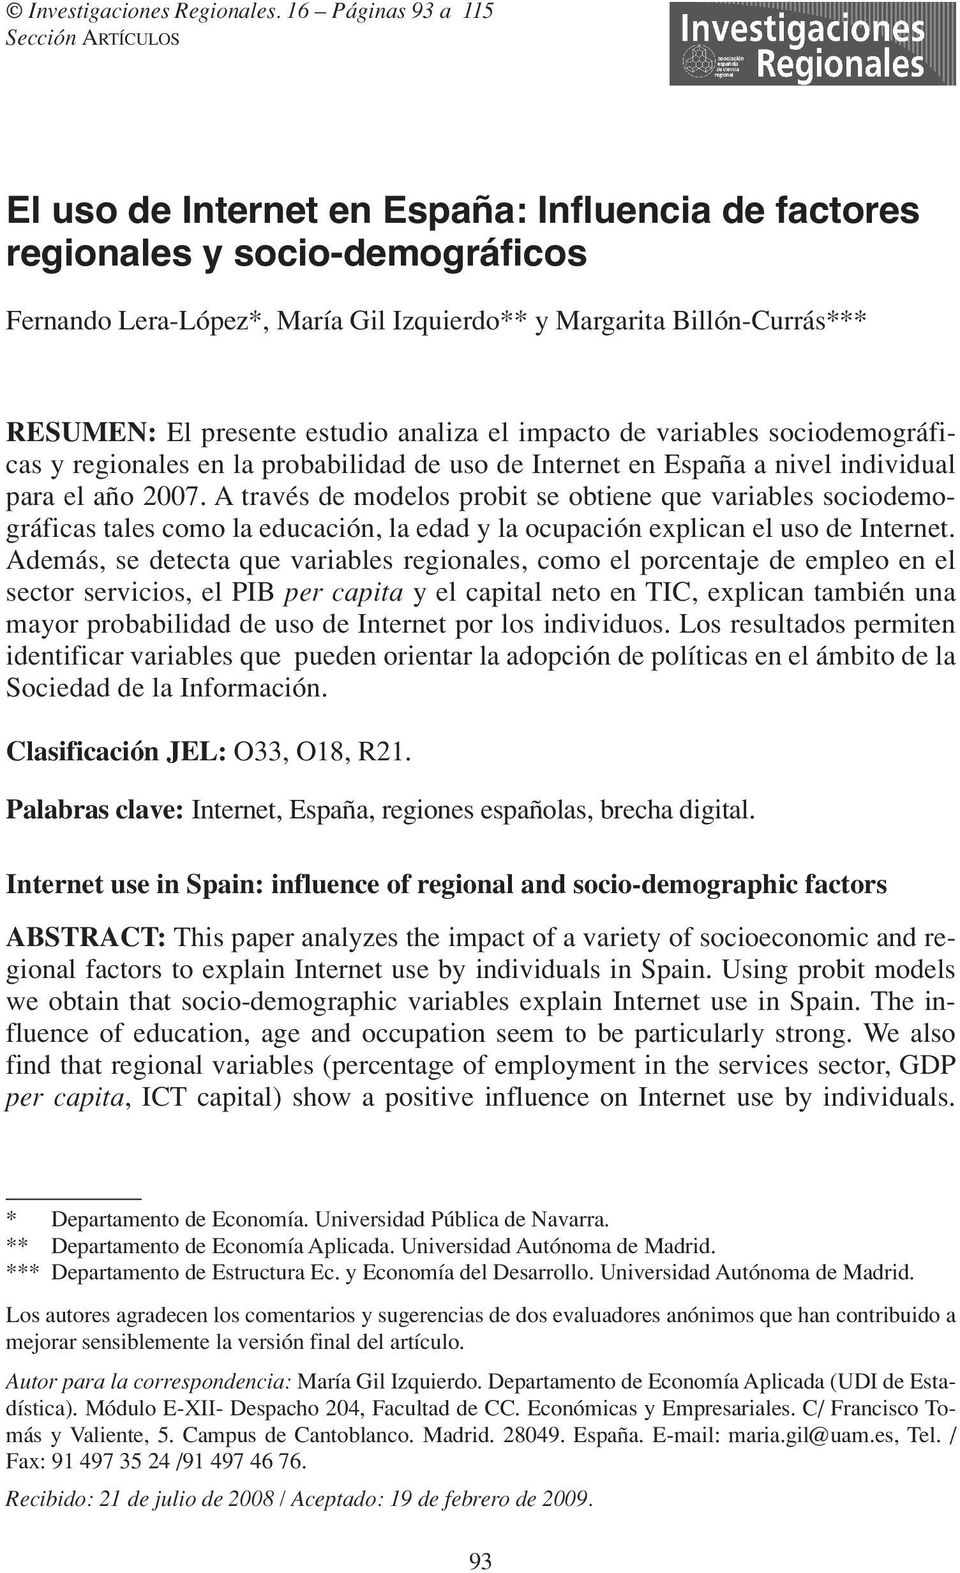 RESUMEN: El presente estudio analiza el impacto de variables sociodemográficas y regionales en la probabilidad de uso de Internet en España a nivel individual para el año 2007.